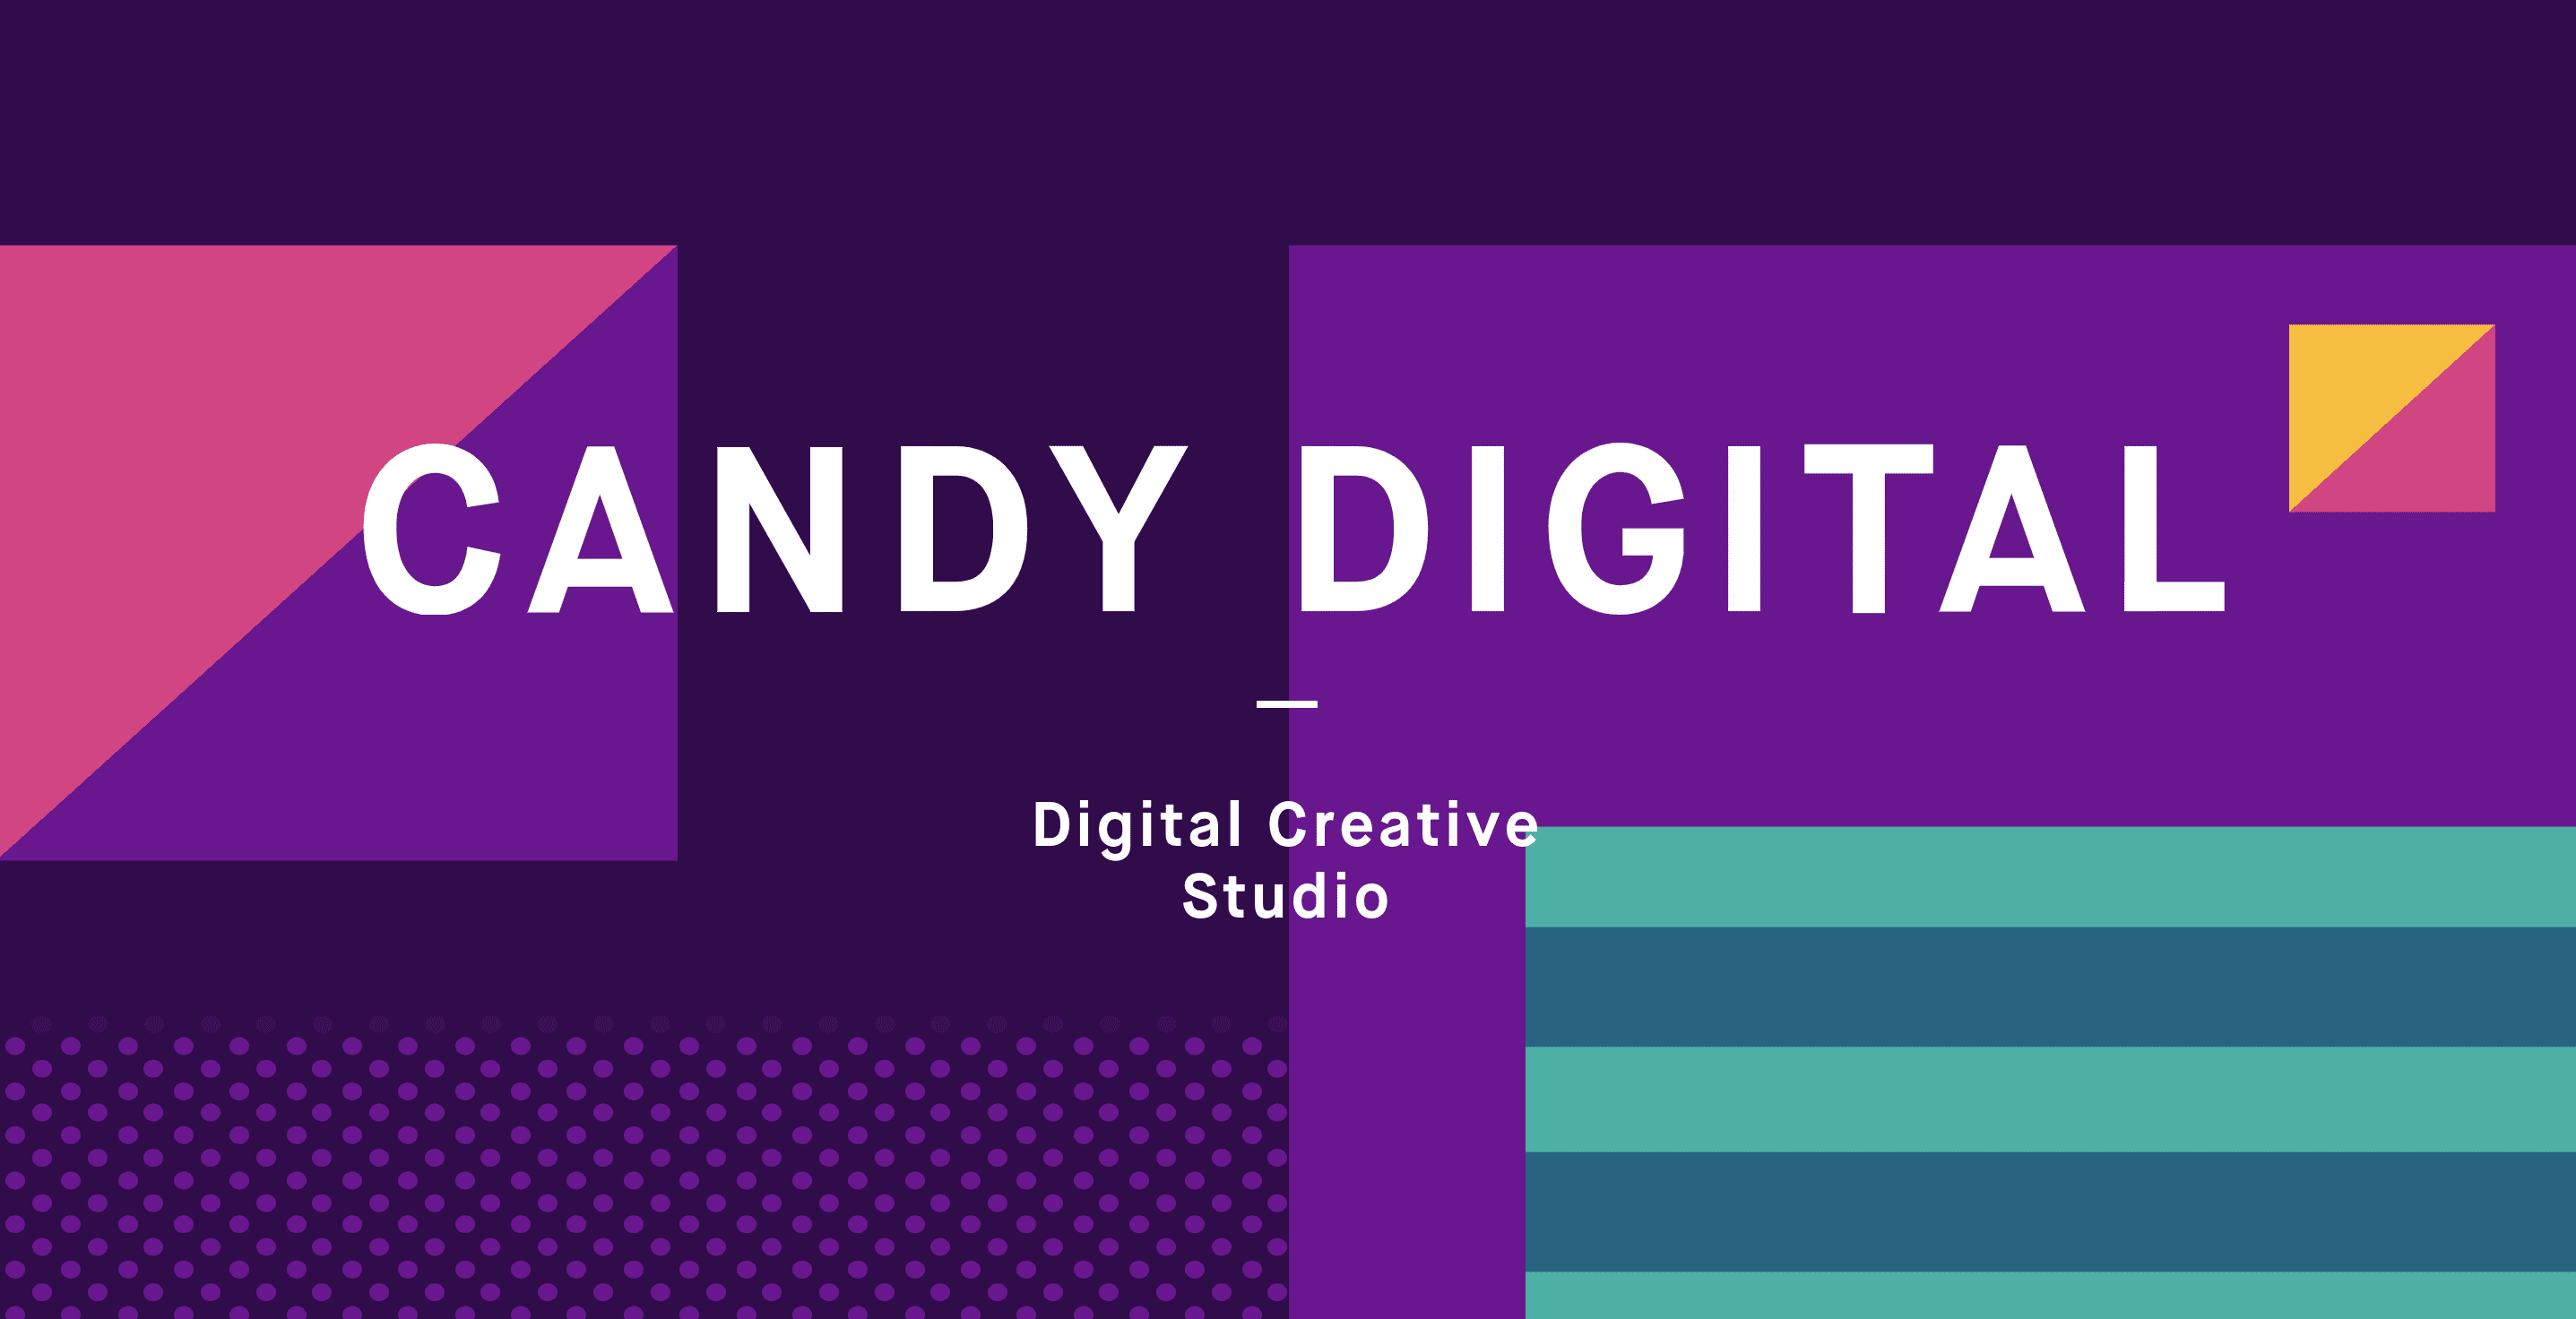 Candy digital